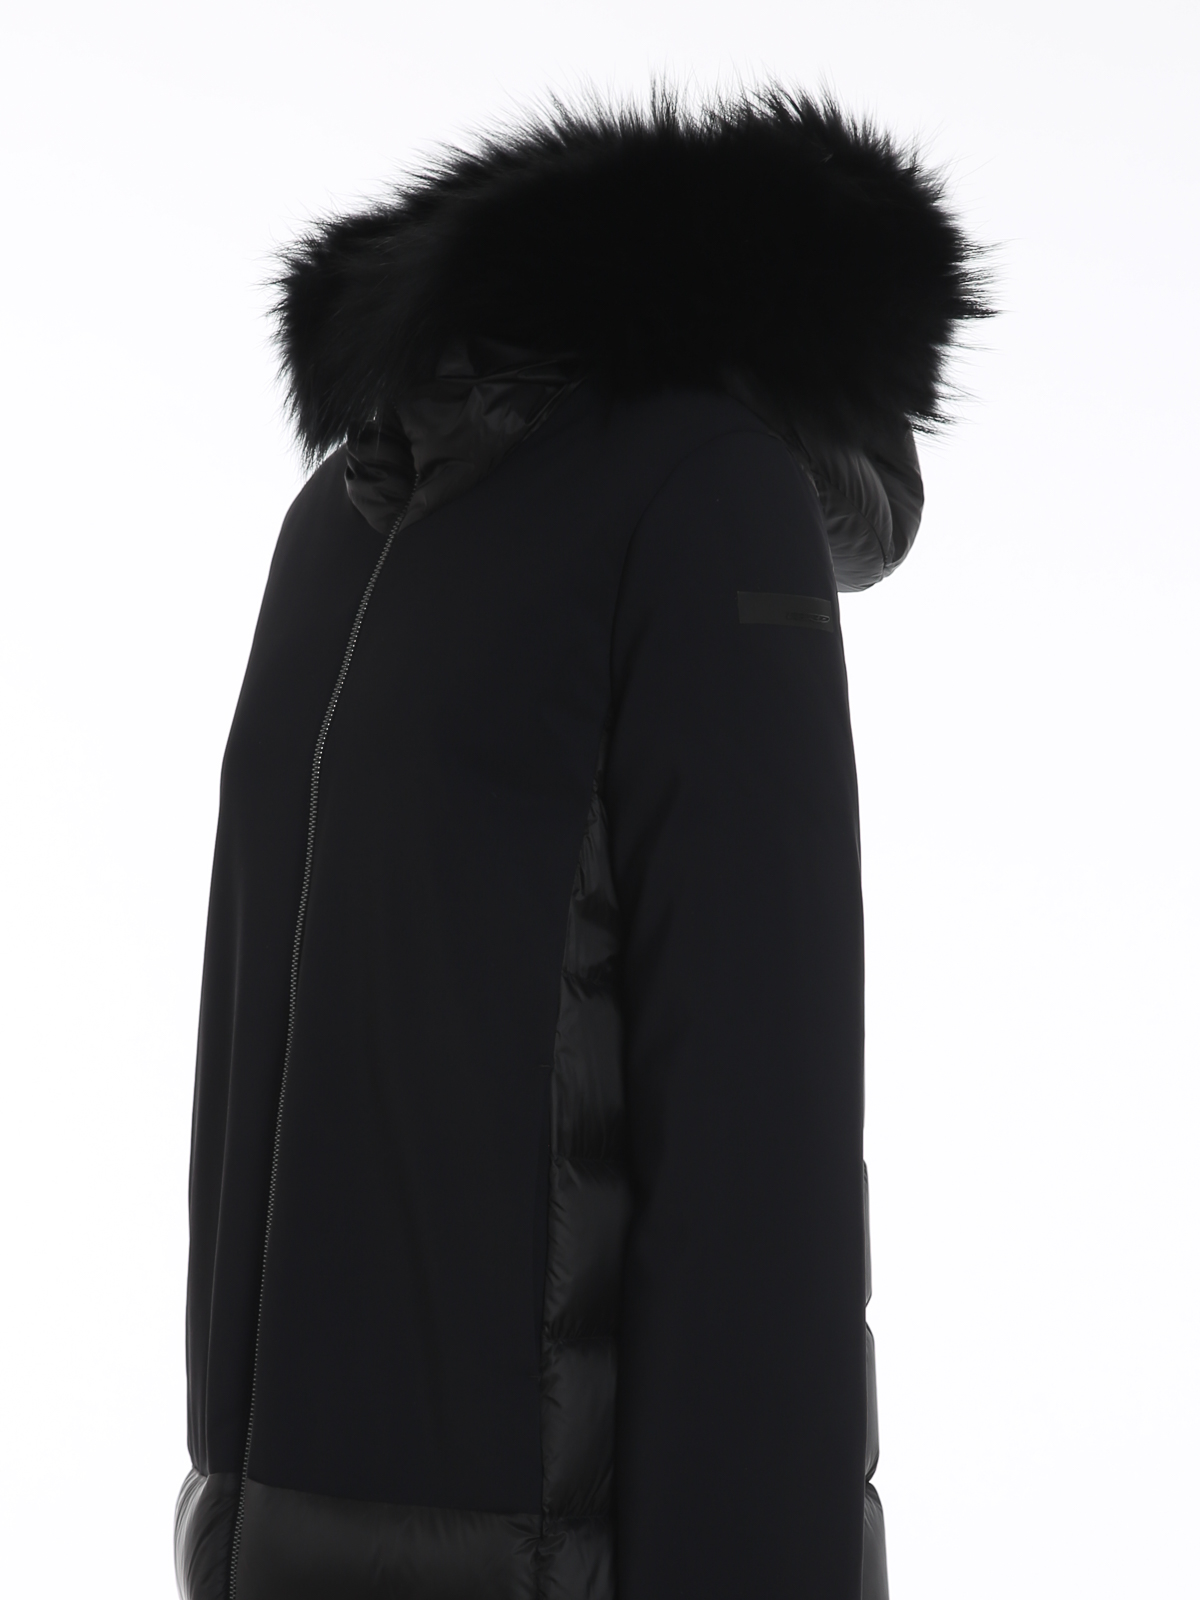 Manteaux rembourrés RRD Roberto Ricci Designs - Winter Hybrid Parka Lady  Fur - Noir - W20515FT10